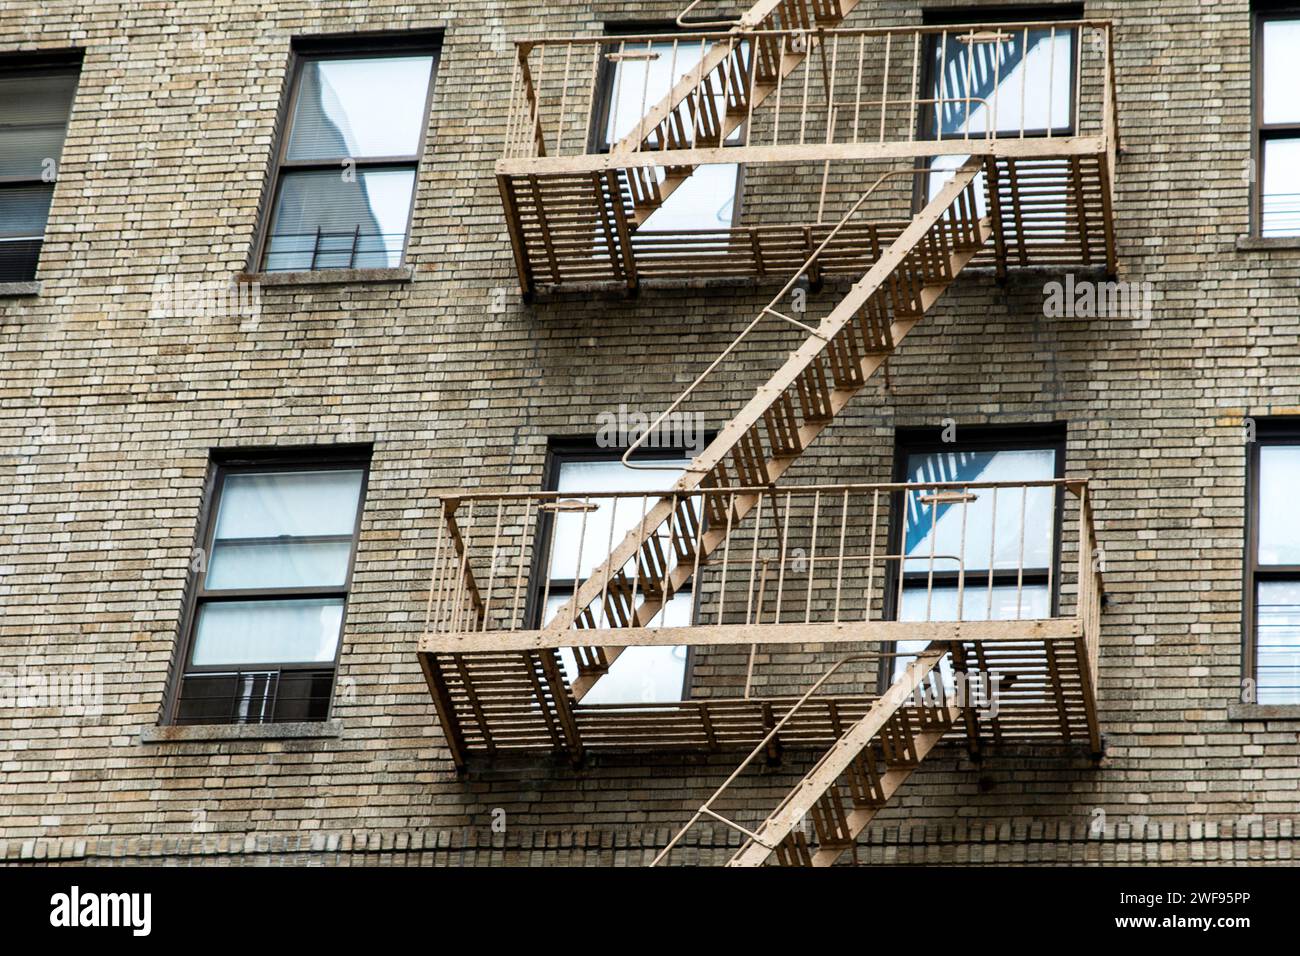 Facciate di tipici edifici in mattoni e fughe di fuoco nel quartiere Bronx di New York, uno dei quartieri della grande Mela negli Stati Uniti. Foto Stock